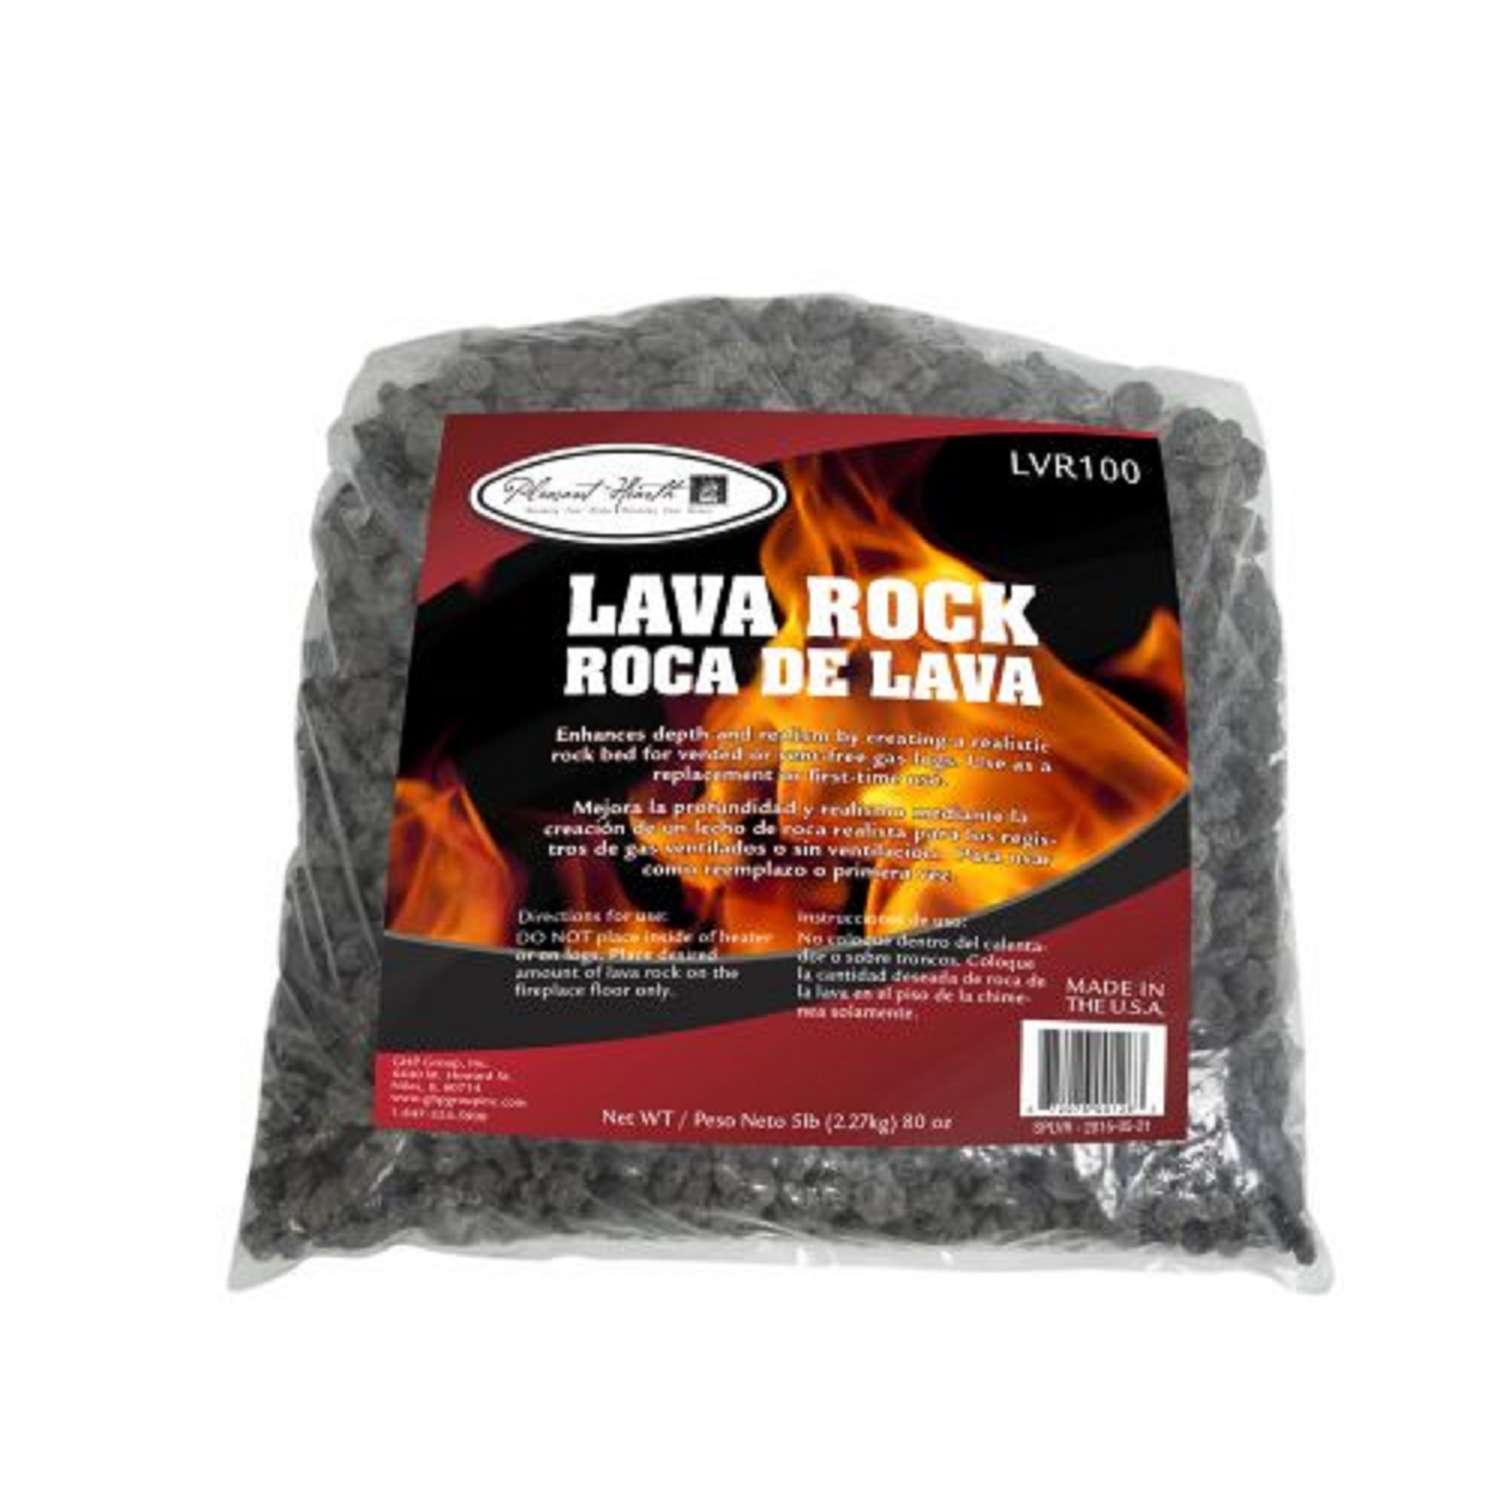 Renewed Char-Broil Lava Rock 6 lbs 